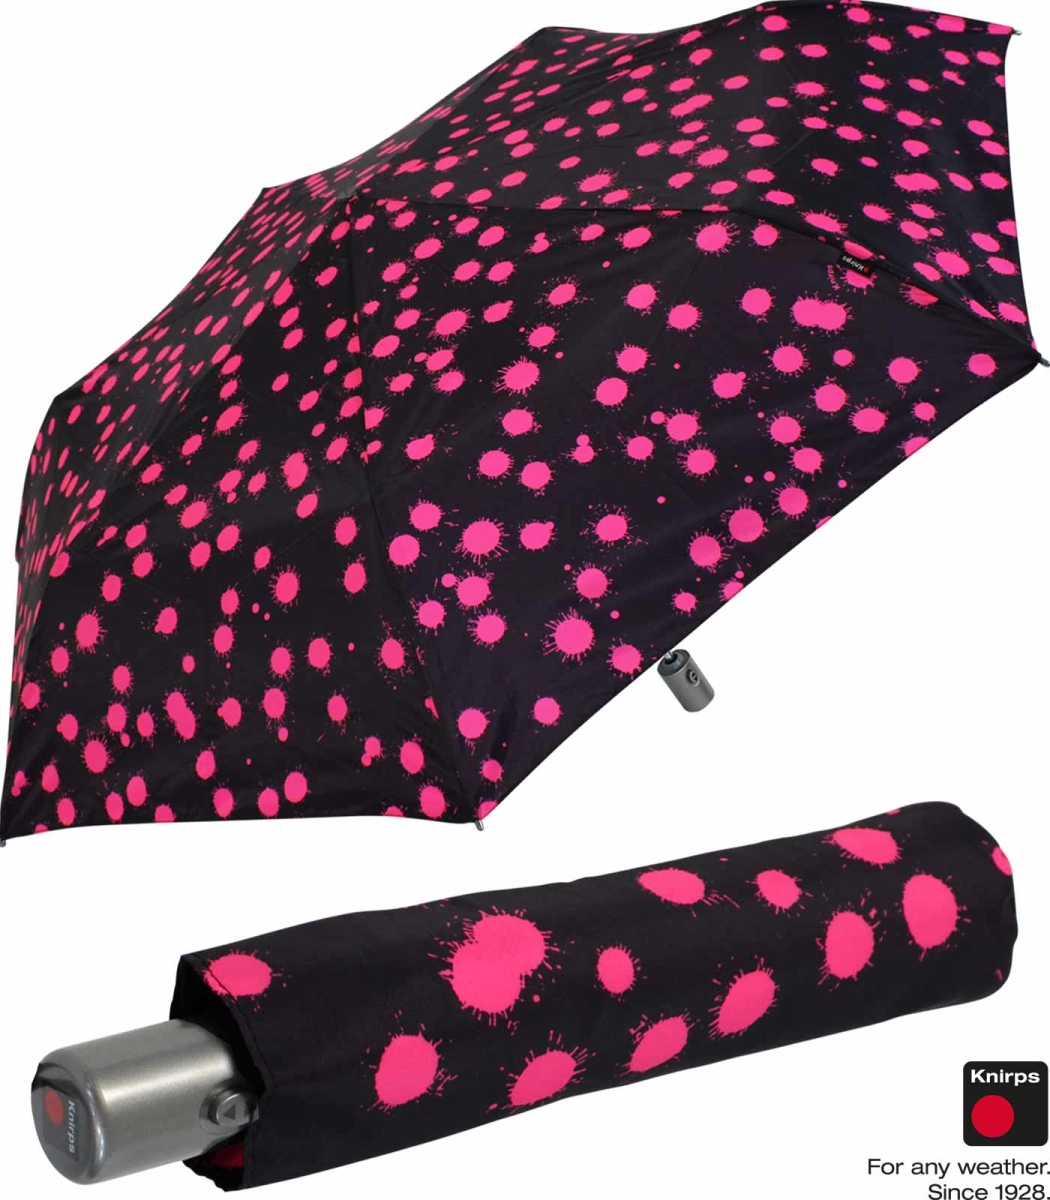 Knirps leicht drops Automatik - Auf-Zu mit Slim klein paint pink Duomatic - Regenschirm und